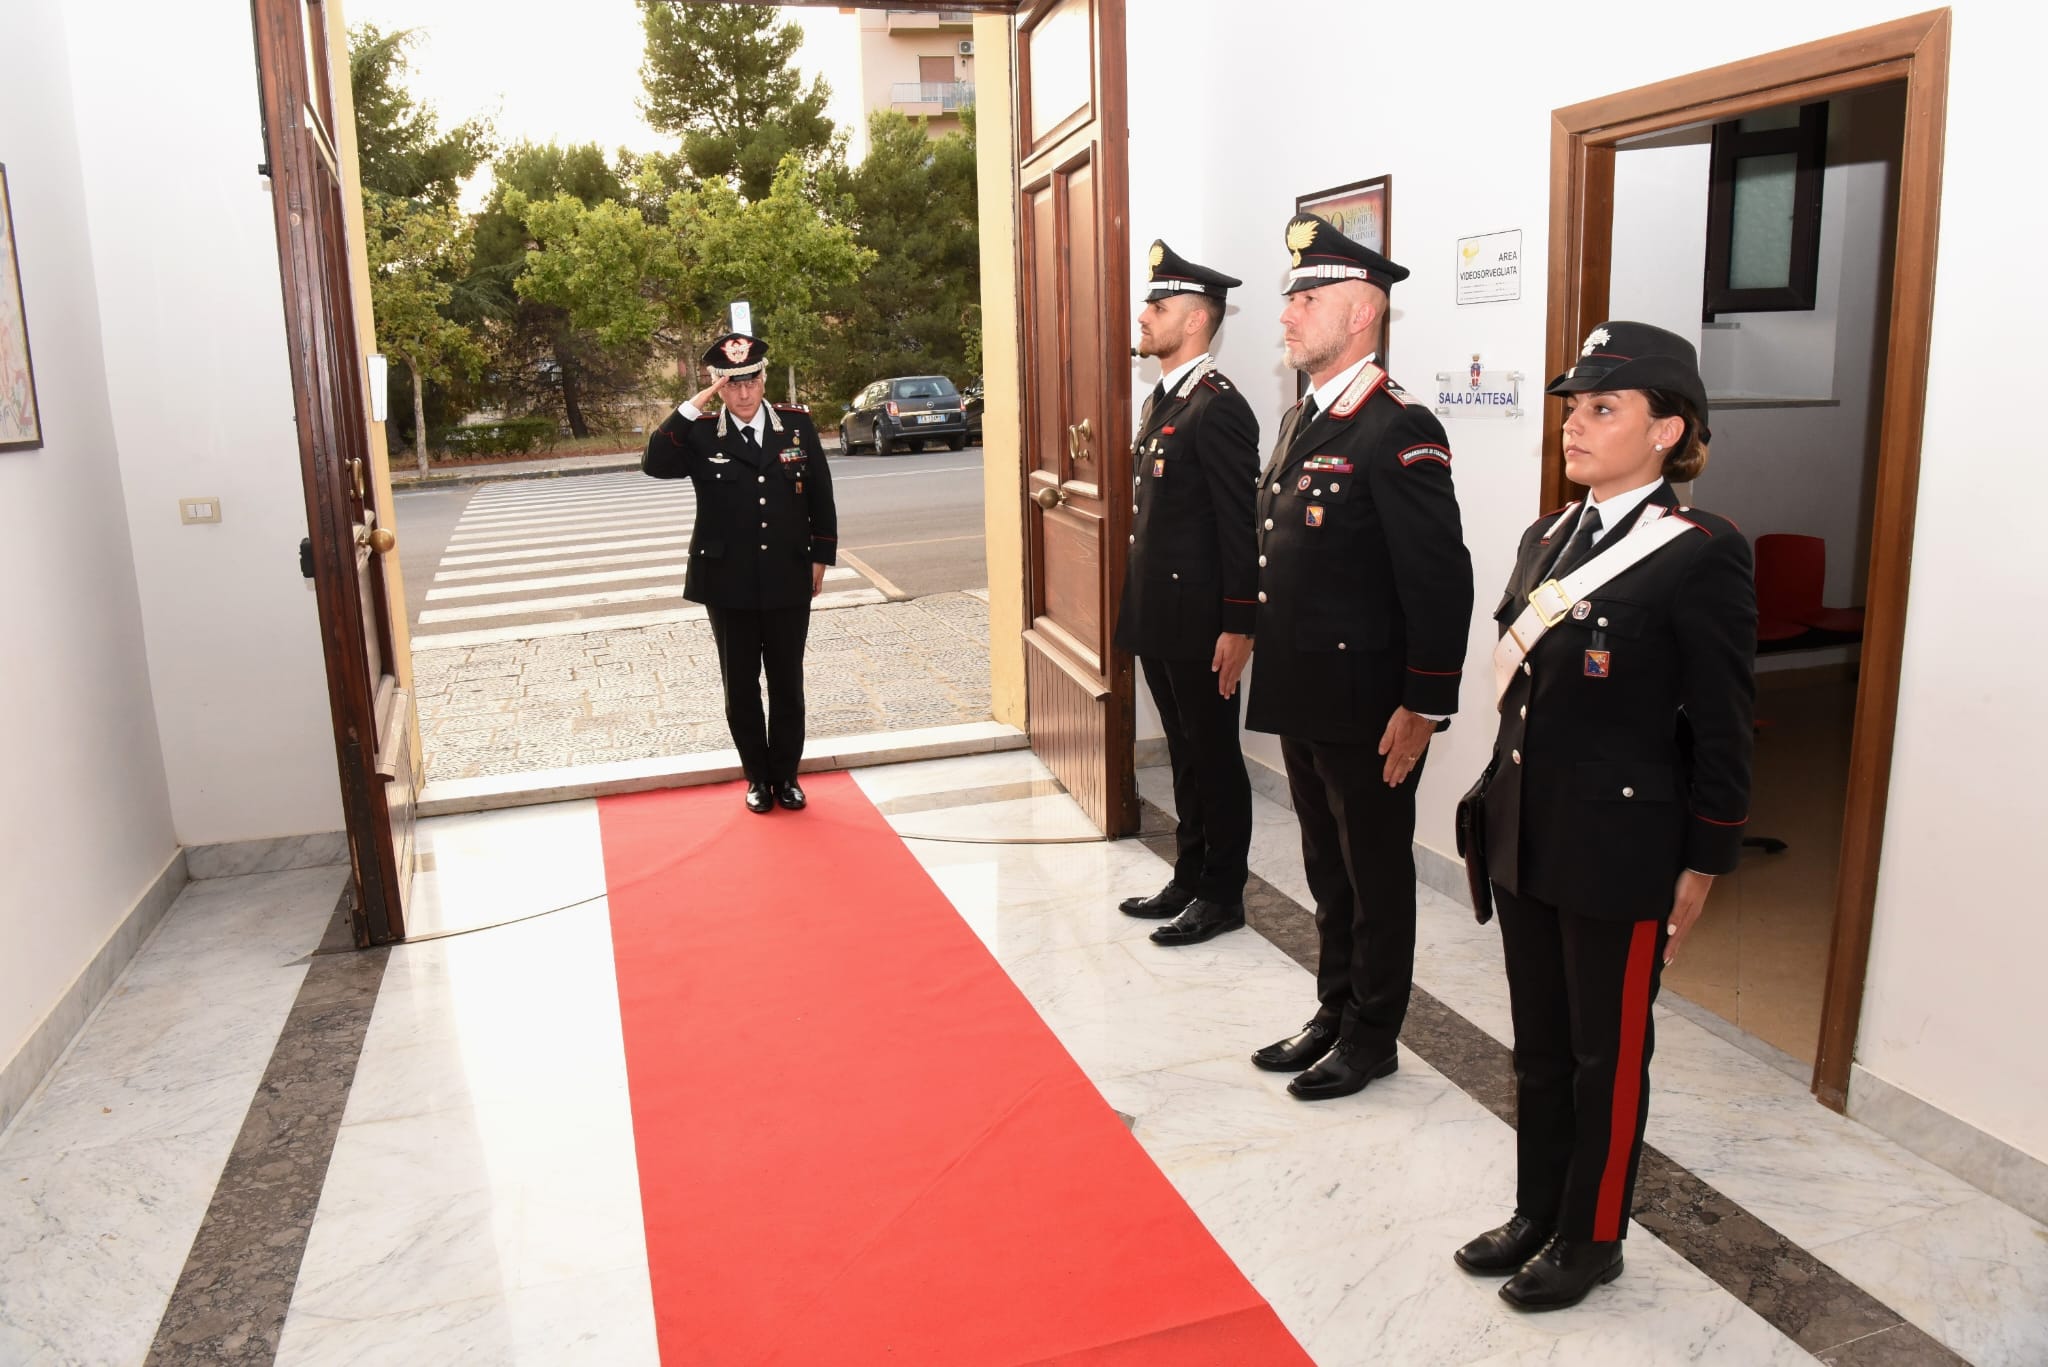 Caltanissetta, Carabinieri: il Generale Rosario Castello in visita al Comando Provinciale